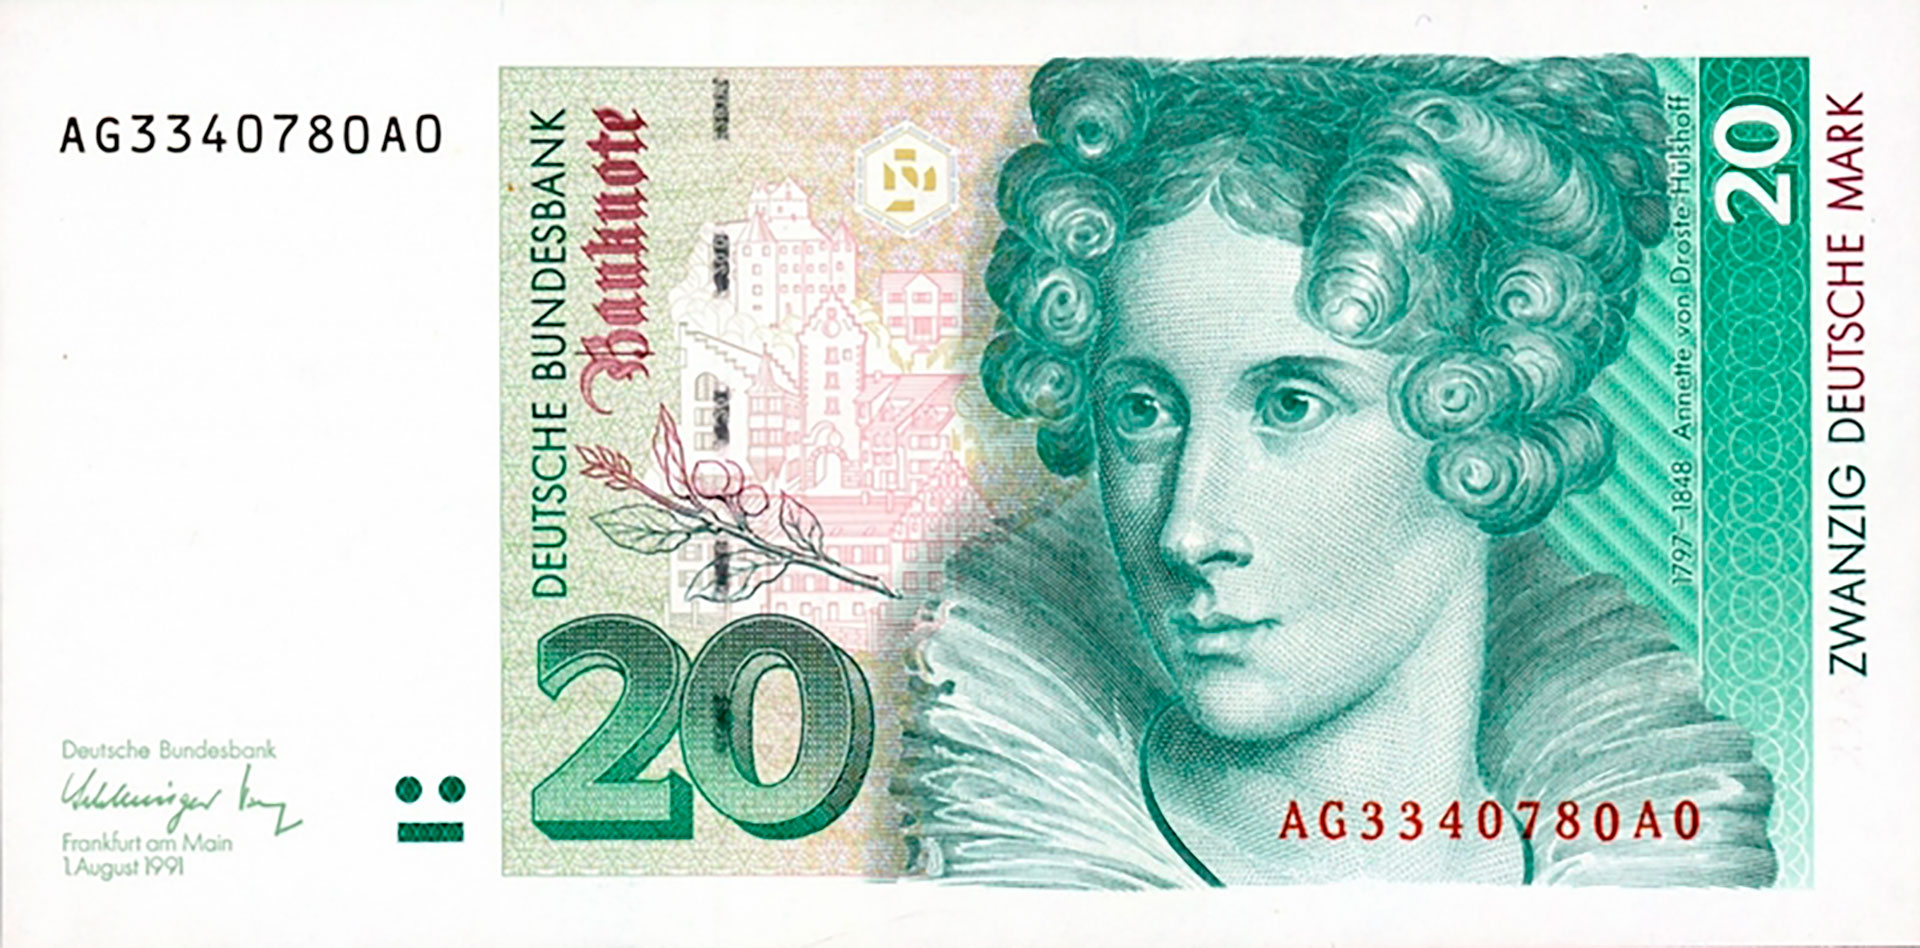 Annette von Droste-Hülshoff (1797-1848) es la poeta más importante de la literatura alemana moderna. Su rostro adornó el billete de 20 marcos alemanes desde 1991 hasta la aparición del euro en 2002.